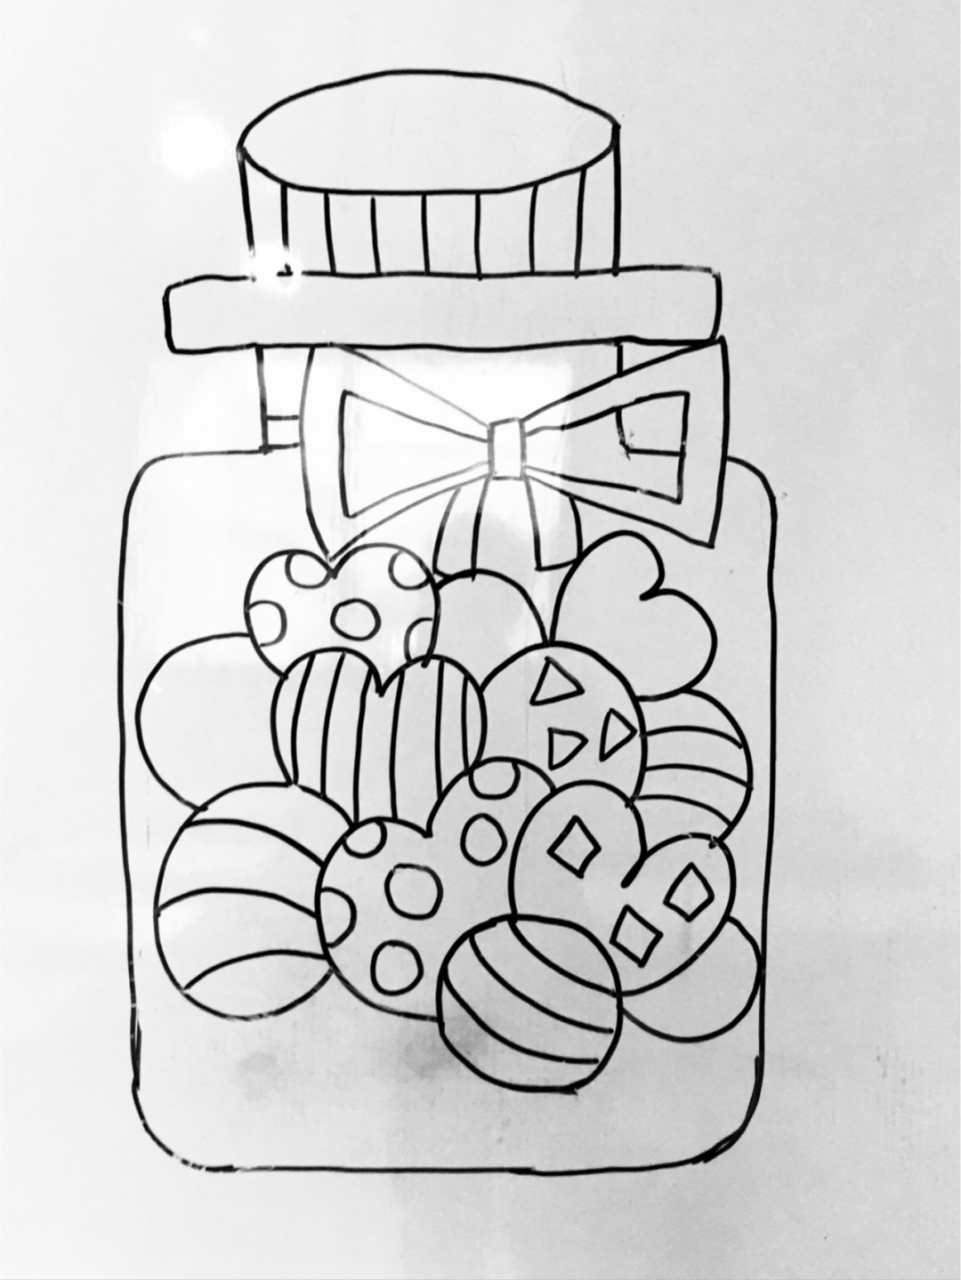 马克笔儿童画/创意画/手绘/备课 【糖果罐子96】 后面有上课时白板